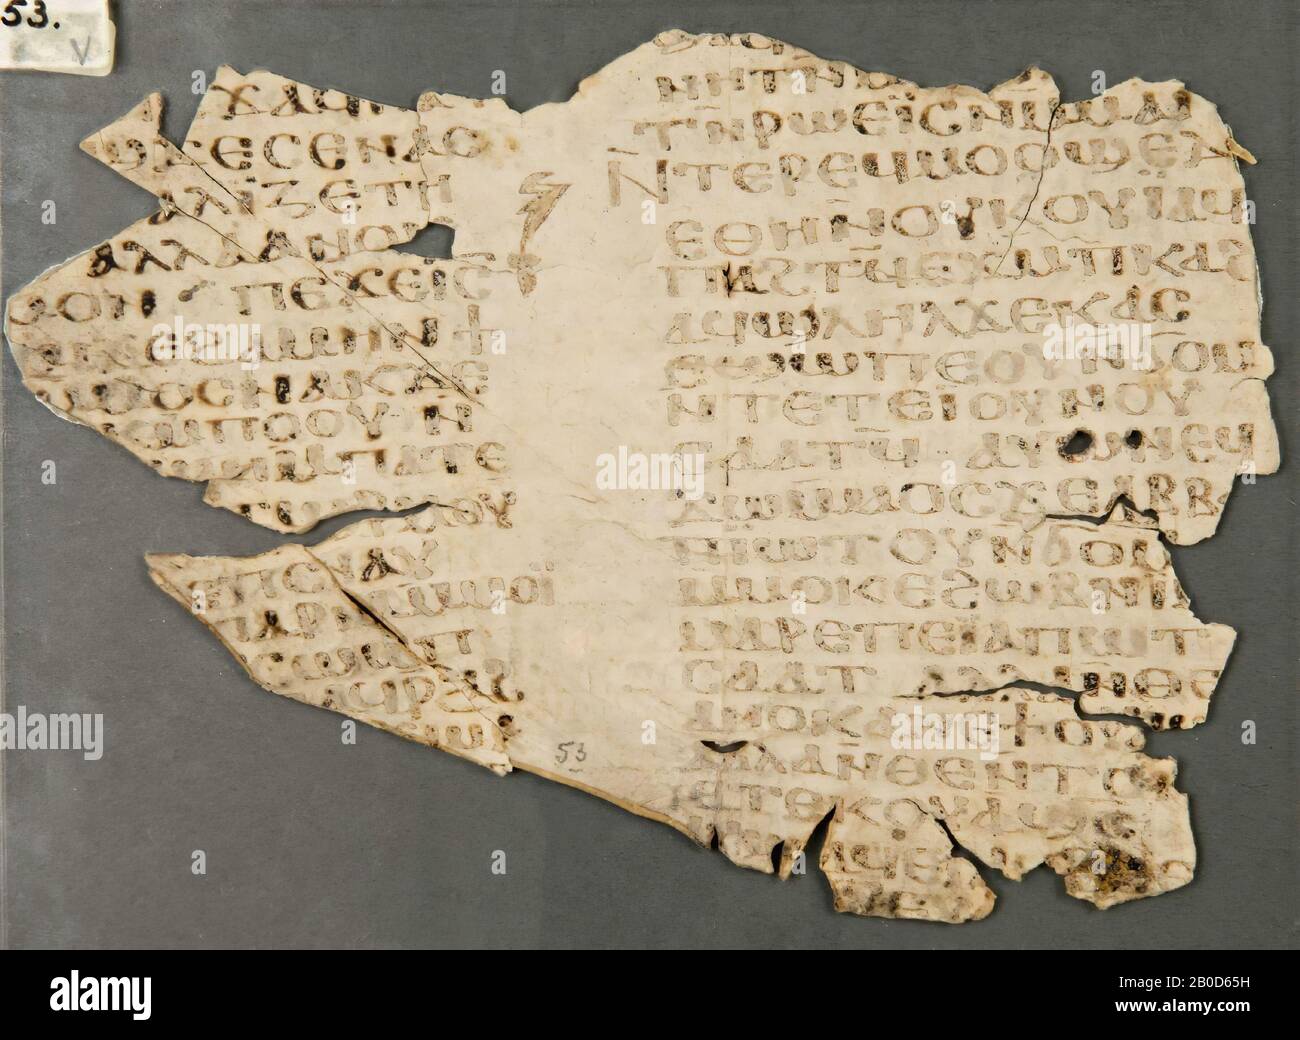 Égypte, manuscrit, texte de la bible, parchemin, 13,4 x 19,2 cm Banque D'Images